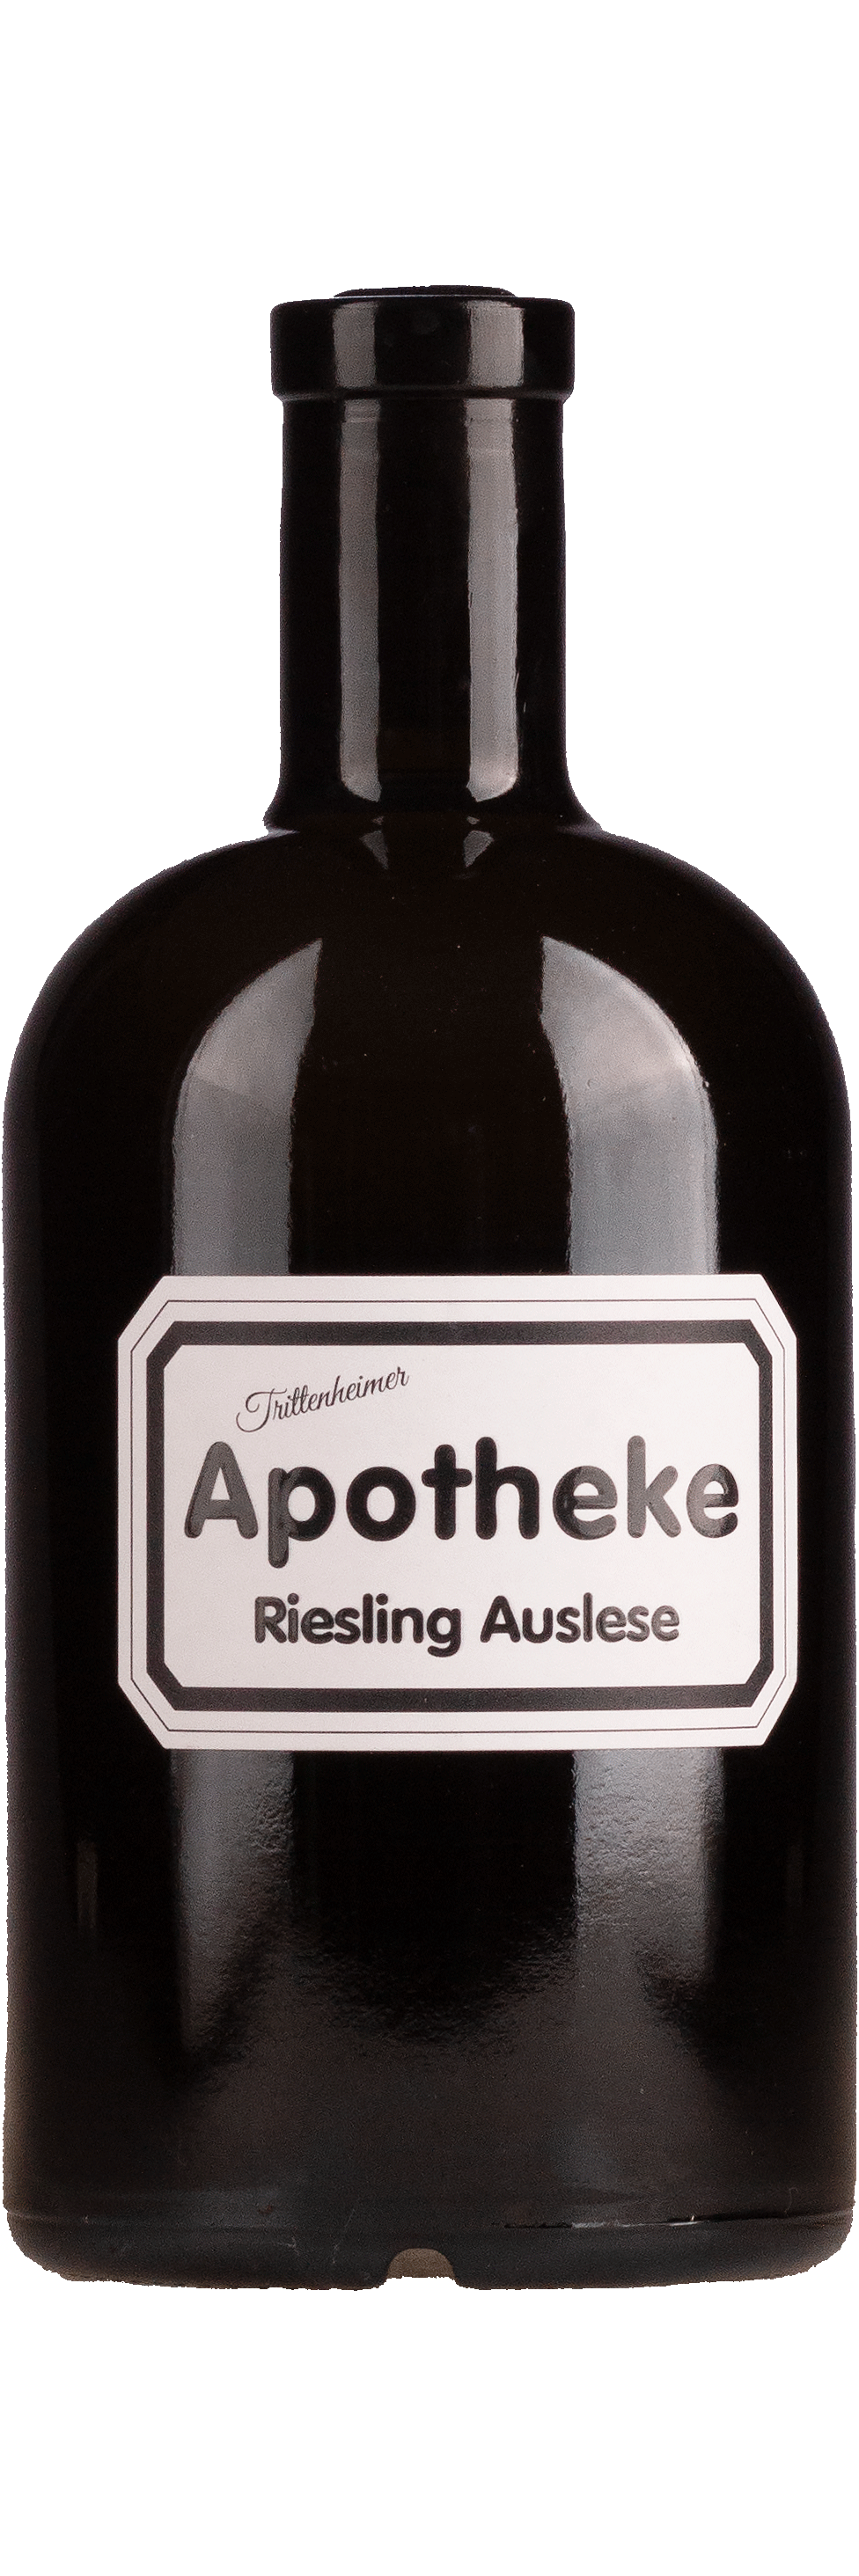 Apotheke Riesling